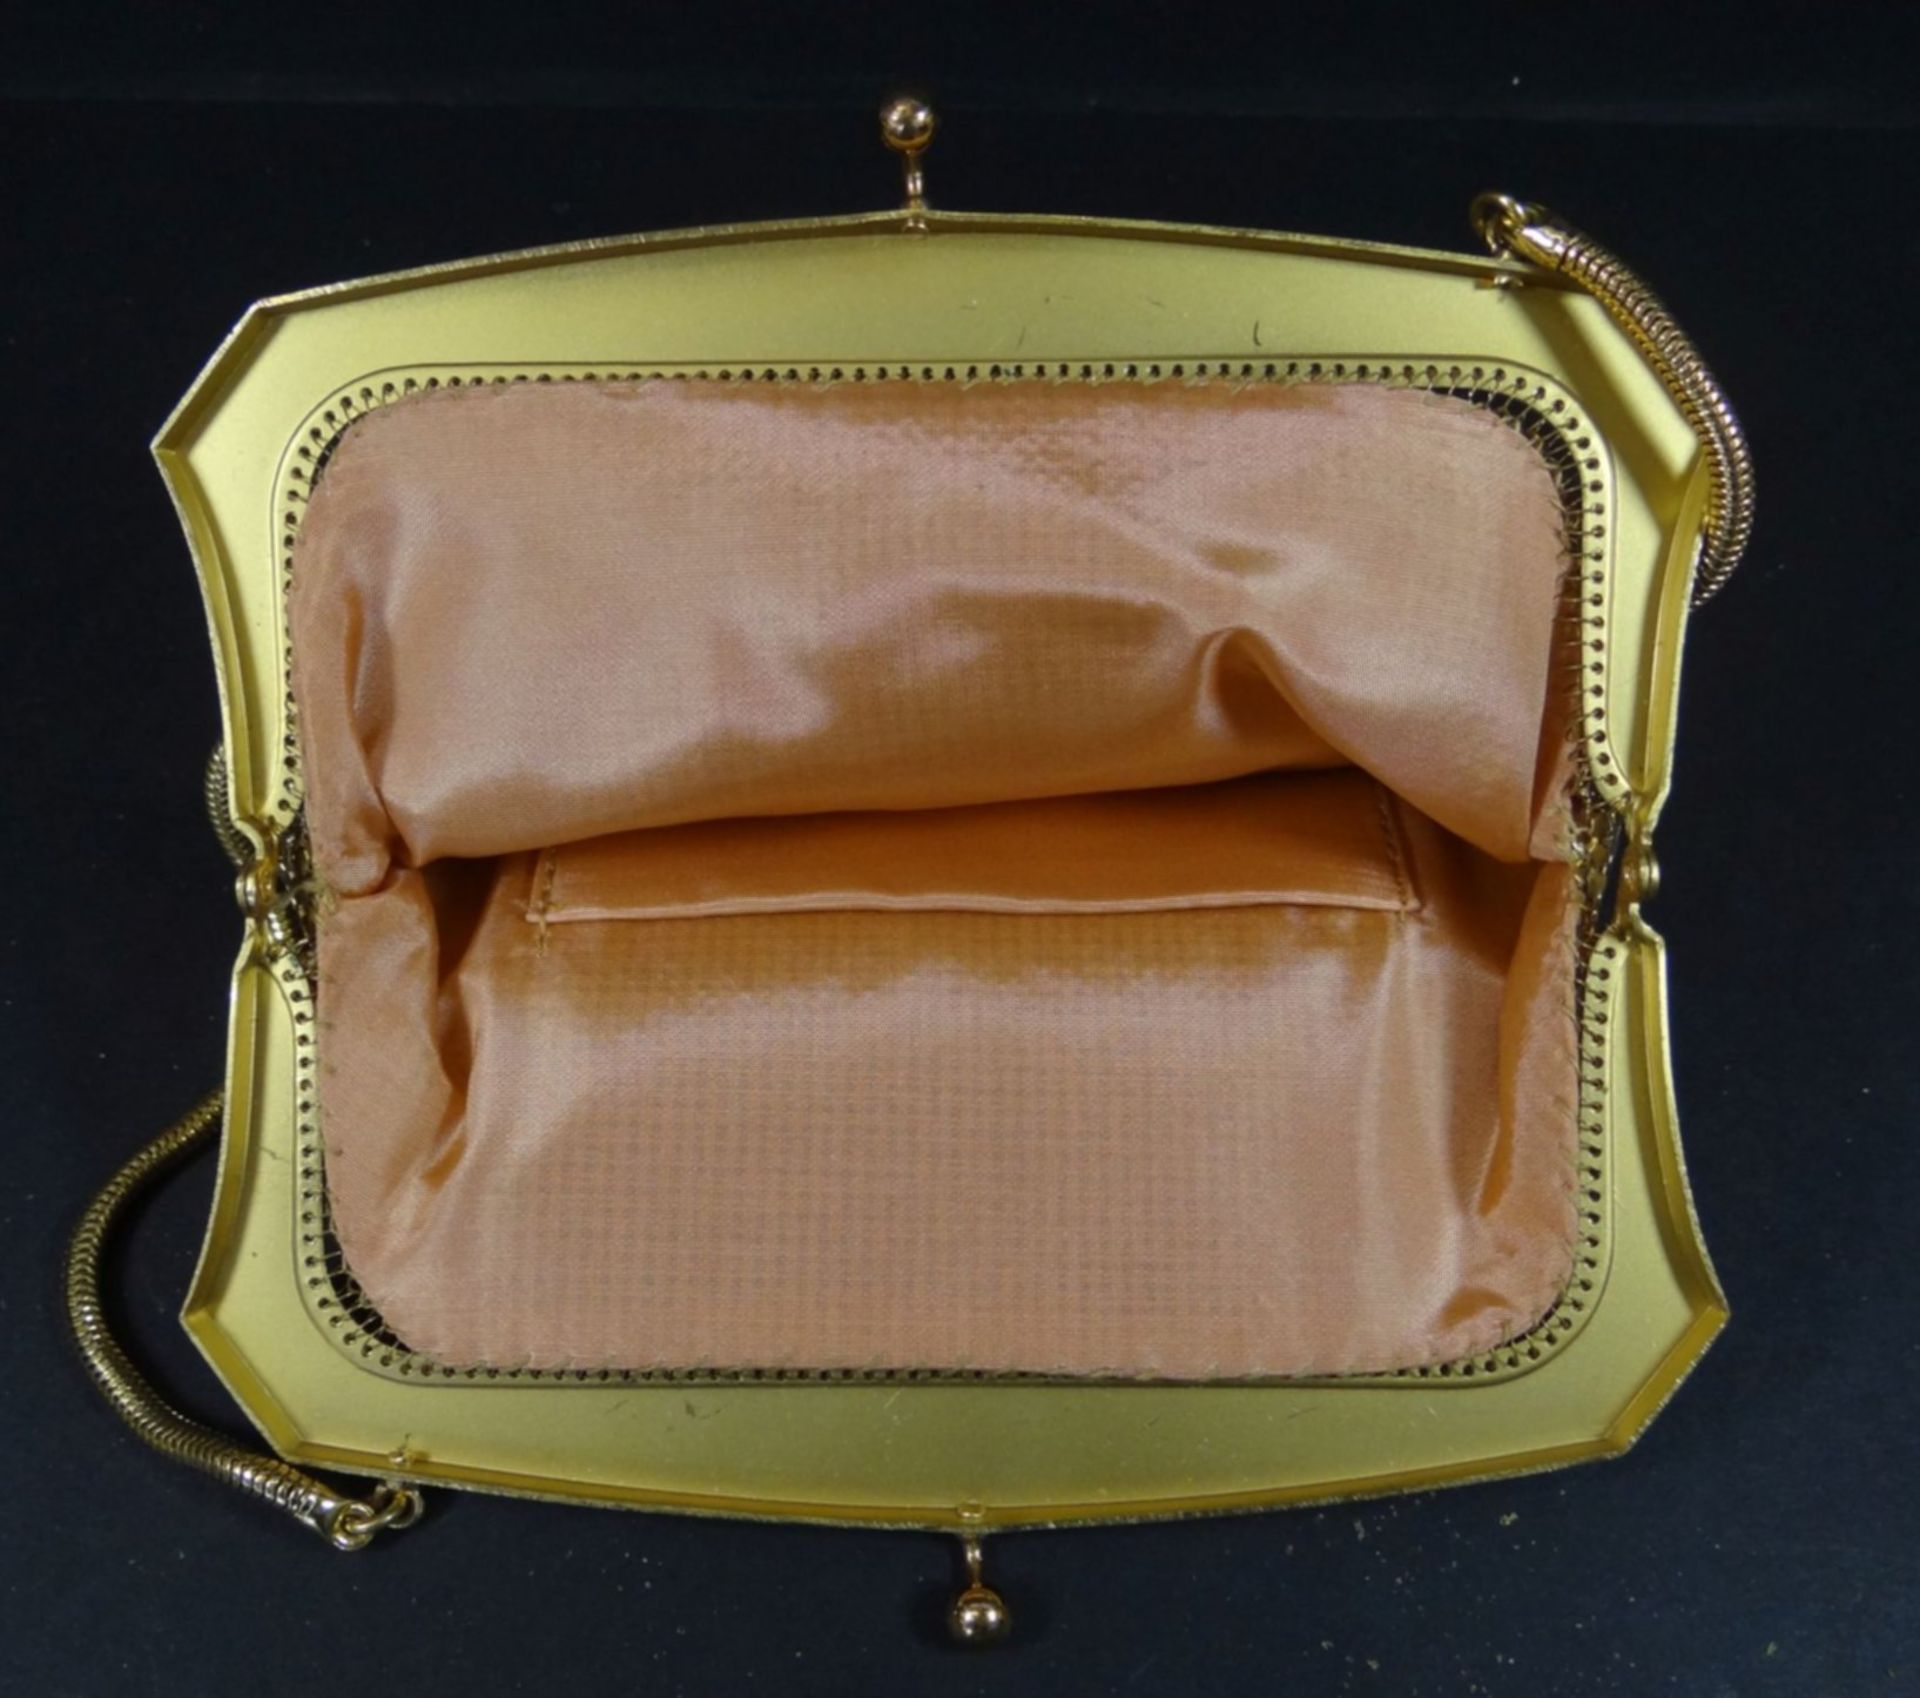 kl. Pailletten-Abendtasche, vergoldet, neuwertig in orig. Karton, 16x15 cm - Bild 3 aus 5